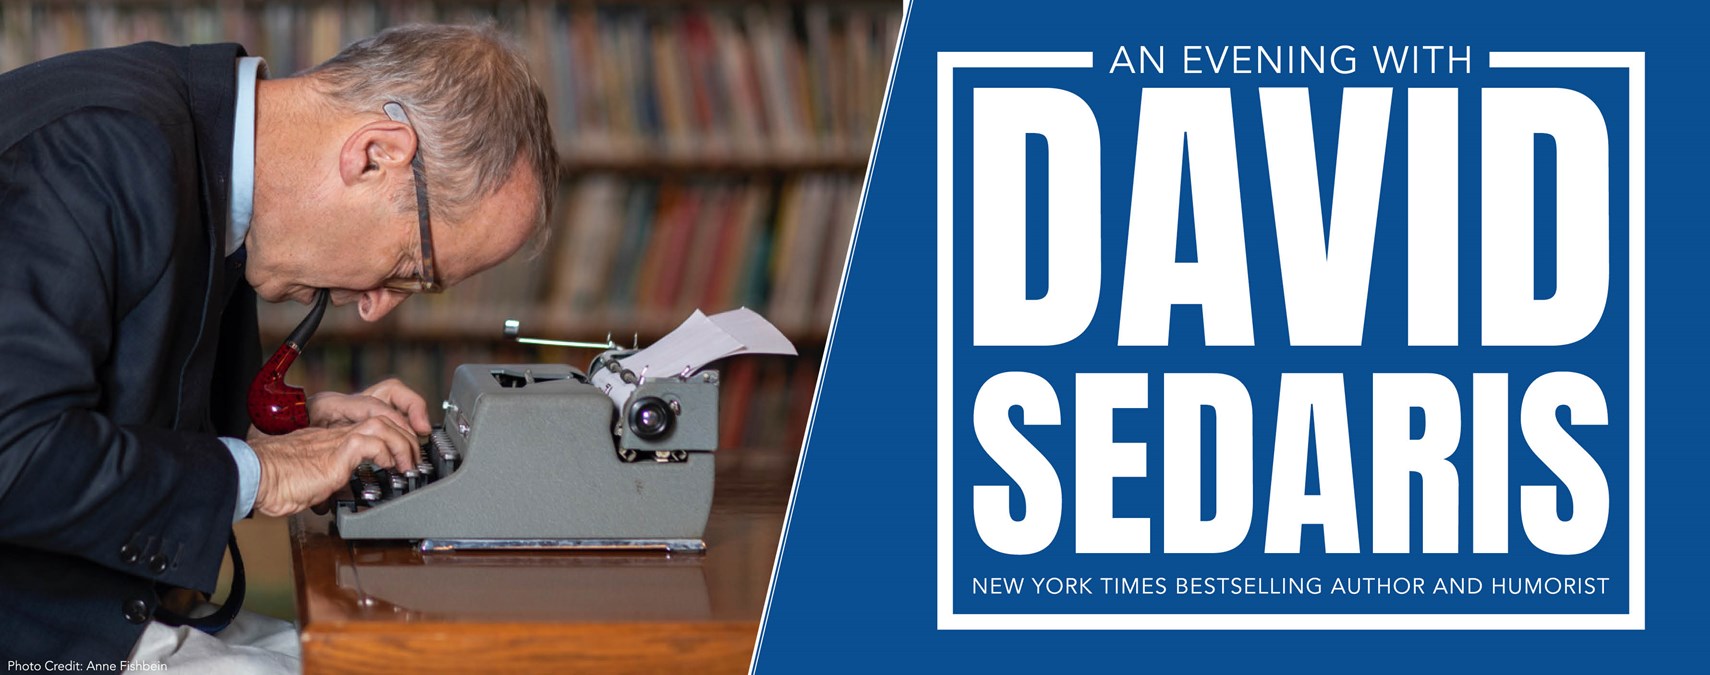 An Evening with David Sedaris -October 18-19 at 8:00pm